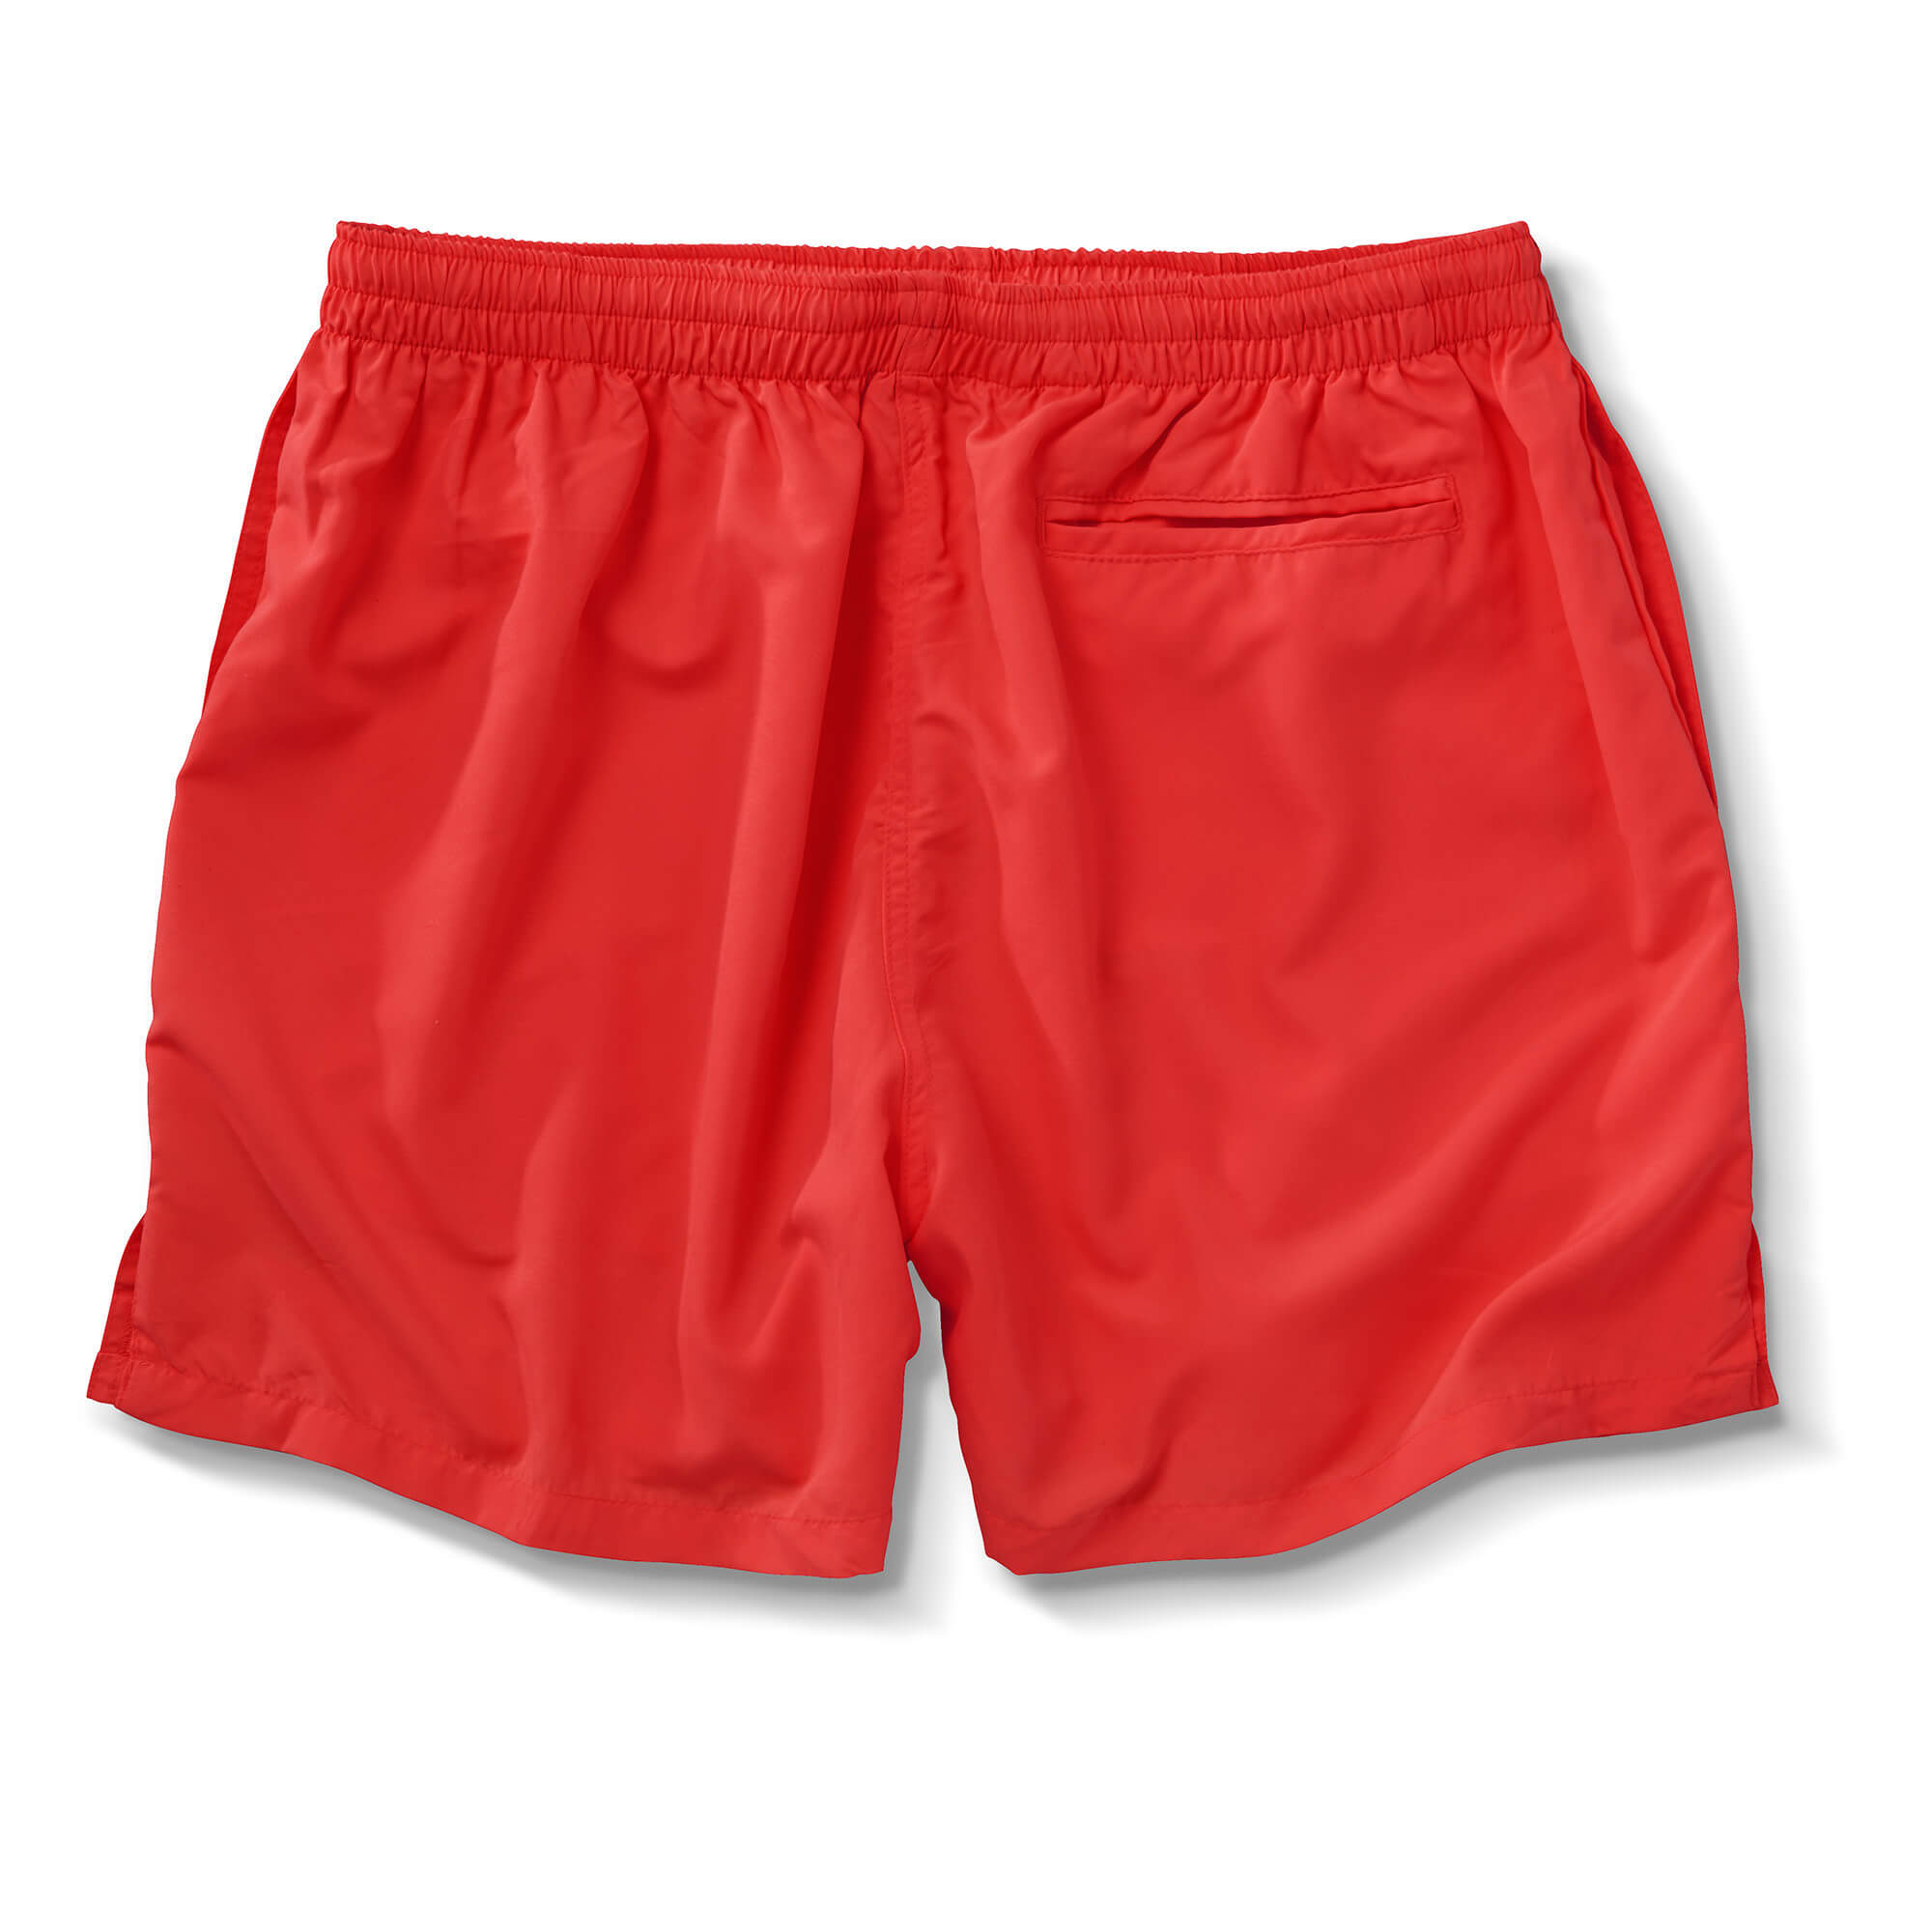 Pusser’s Gym Shorts | Pusser's British West Indies, Ltd.